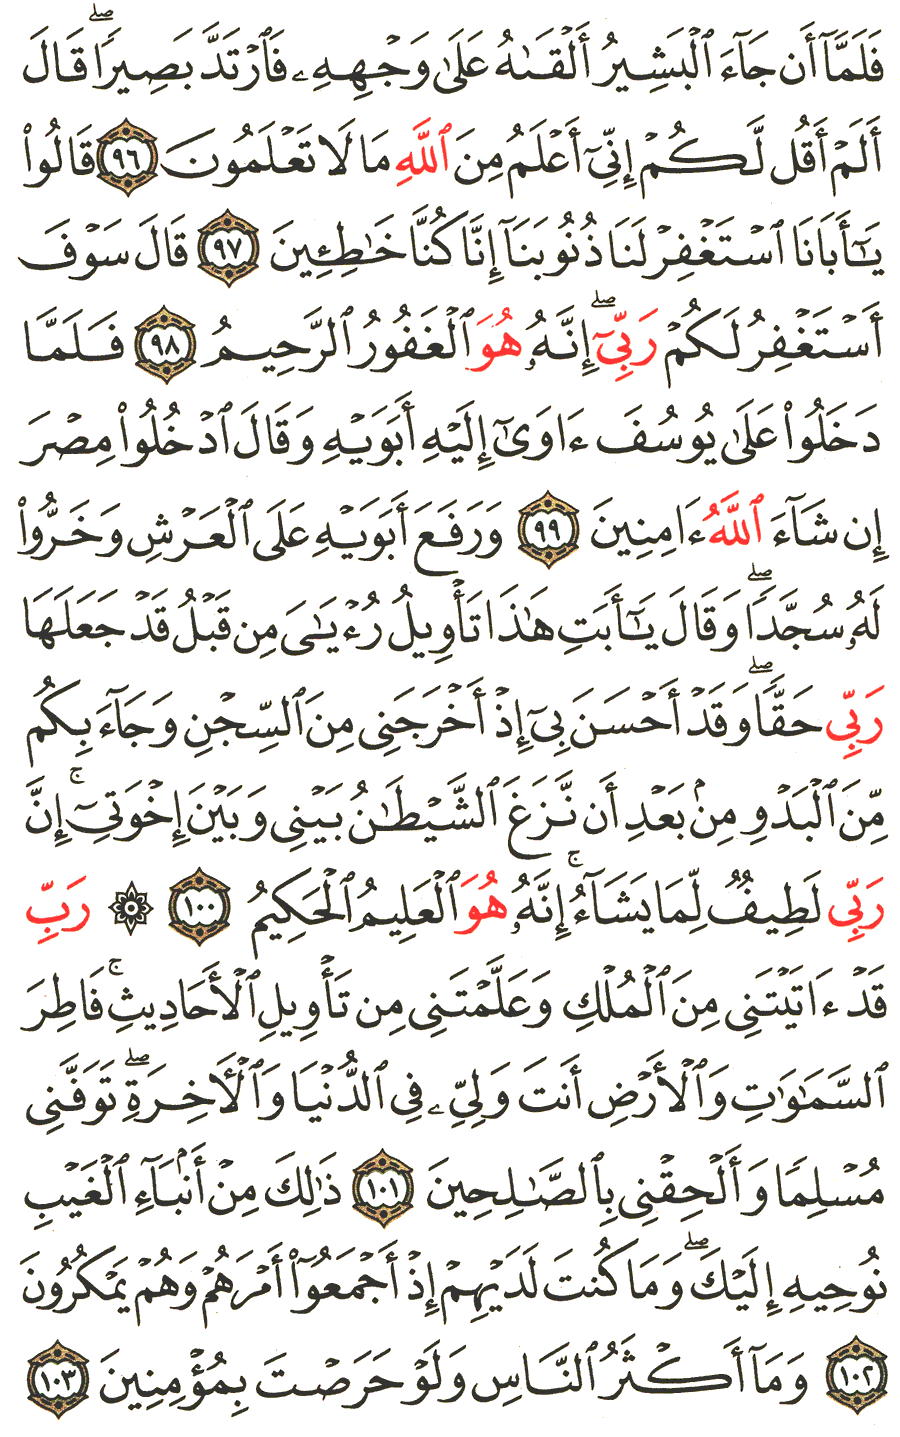 الصفحة 247 من القرآن الكريم